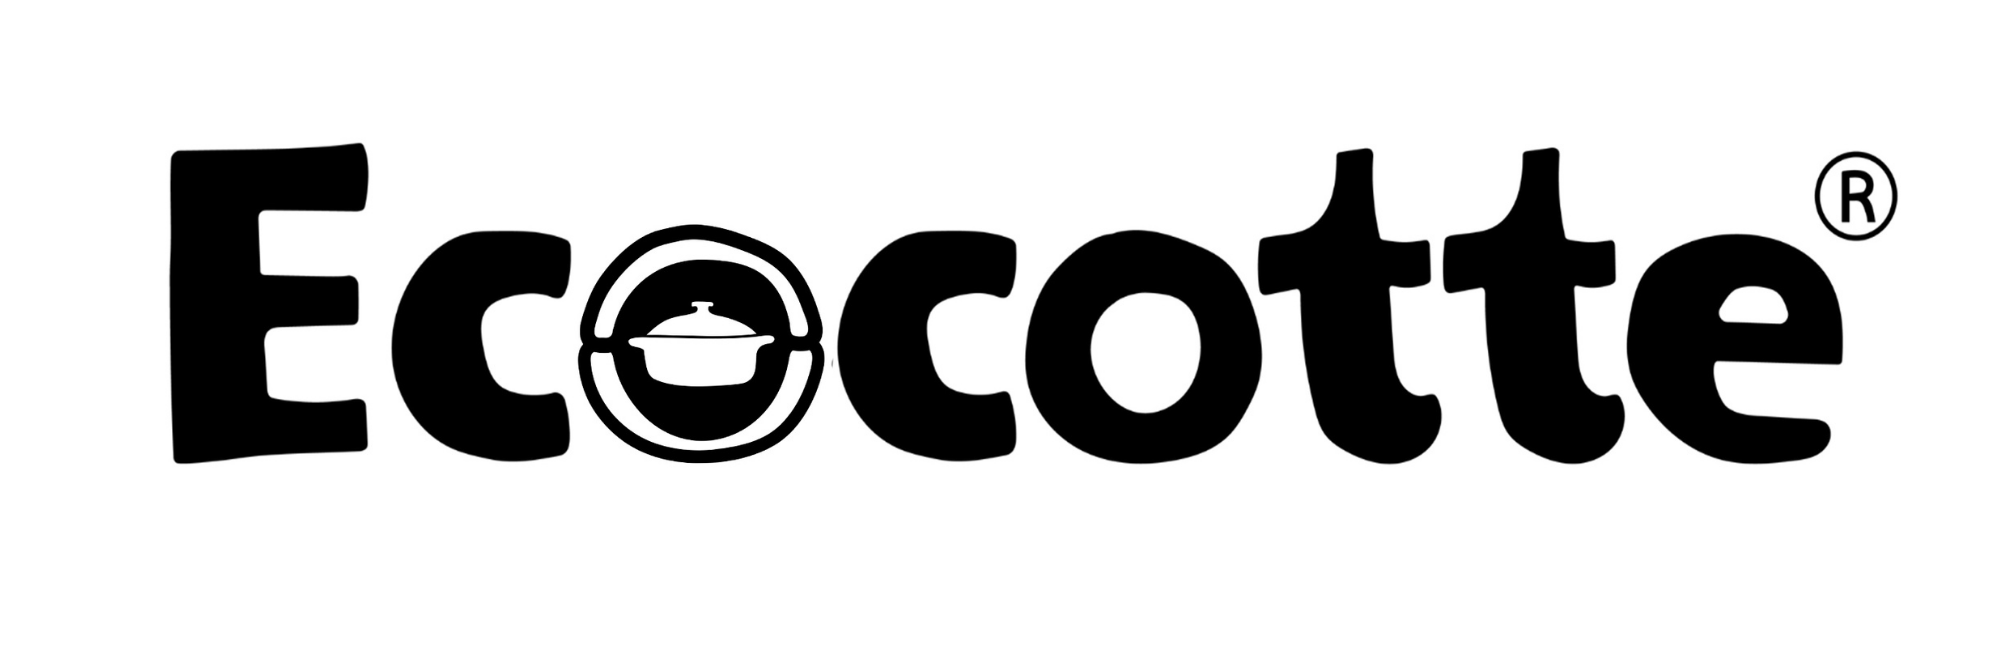 Logo Ecocotte